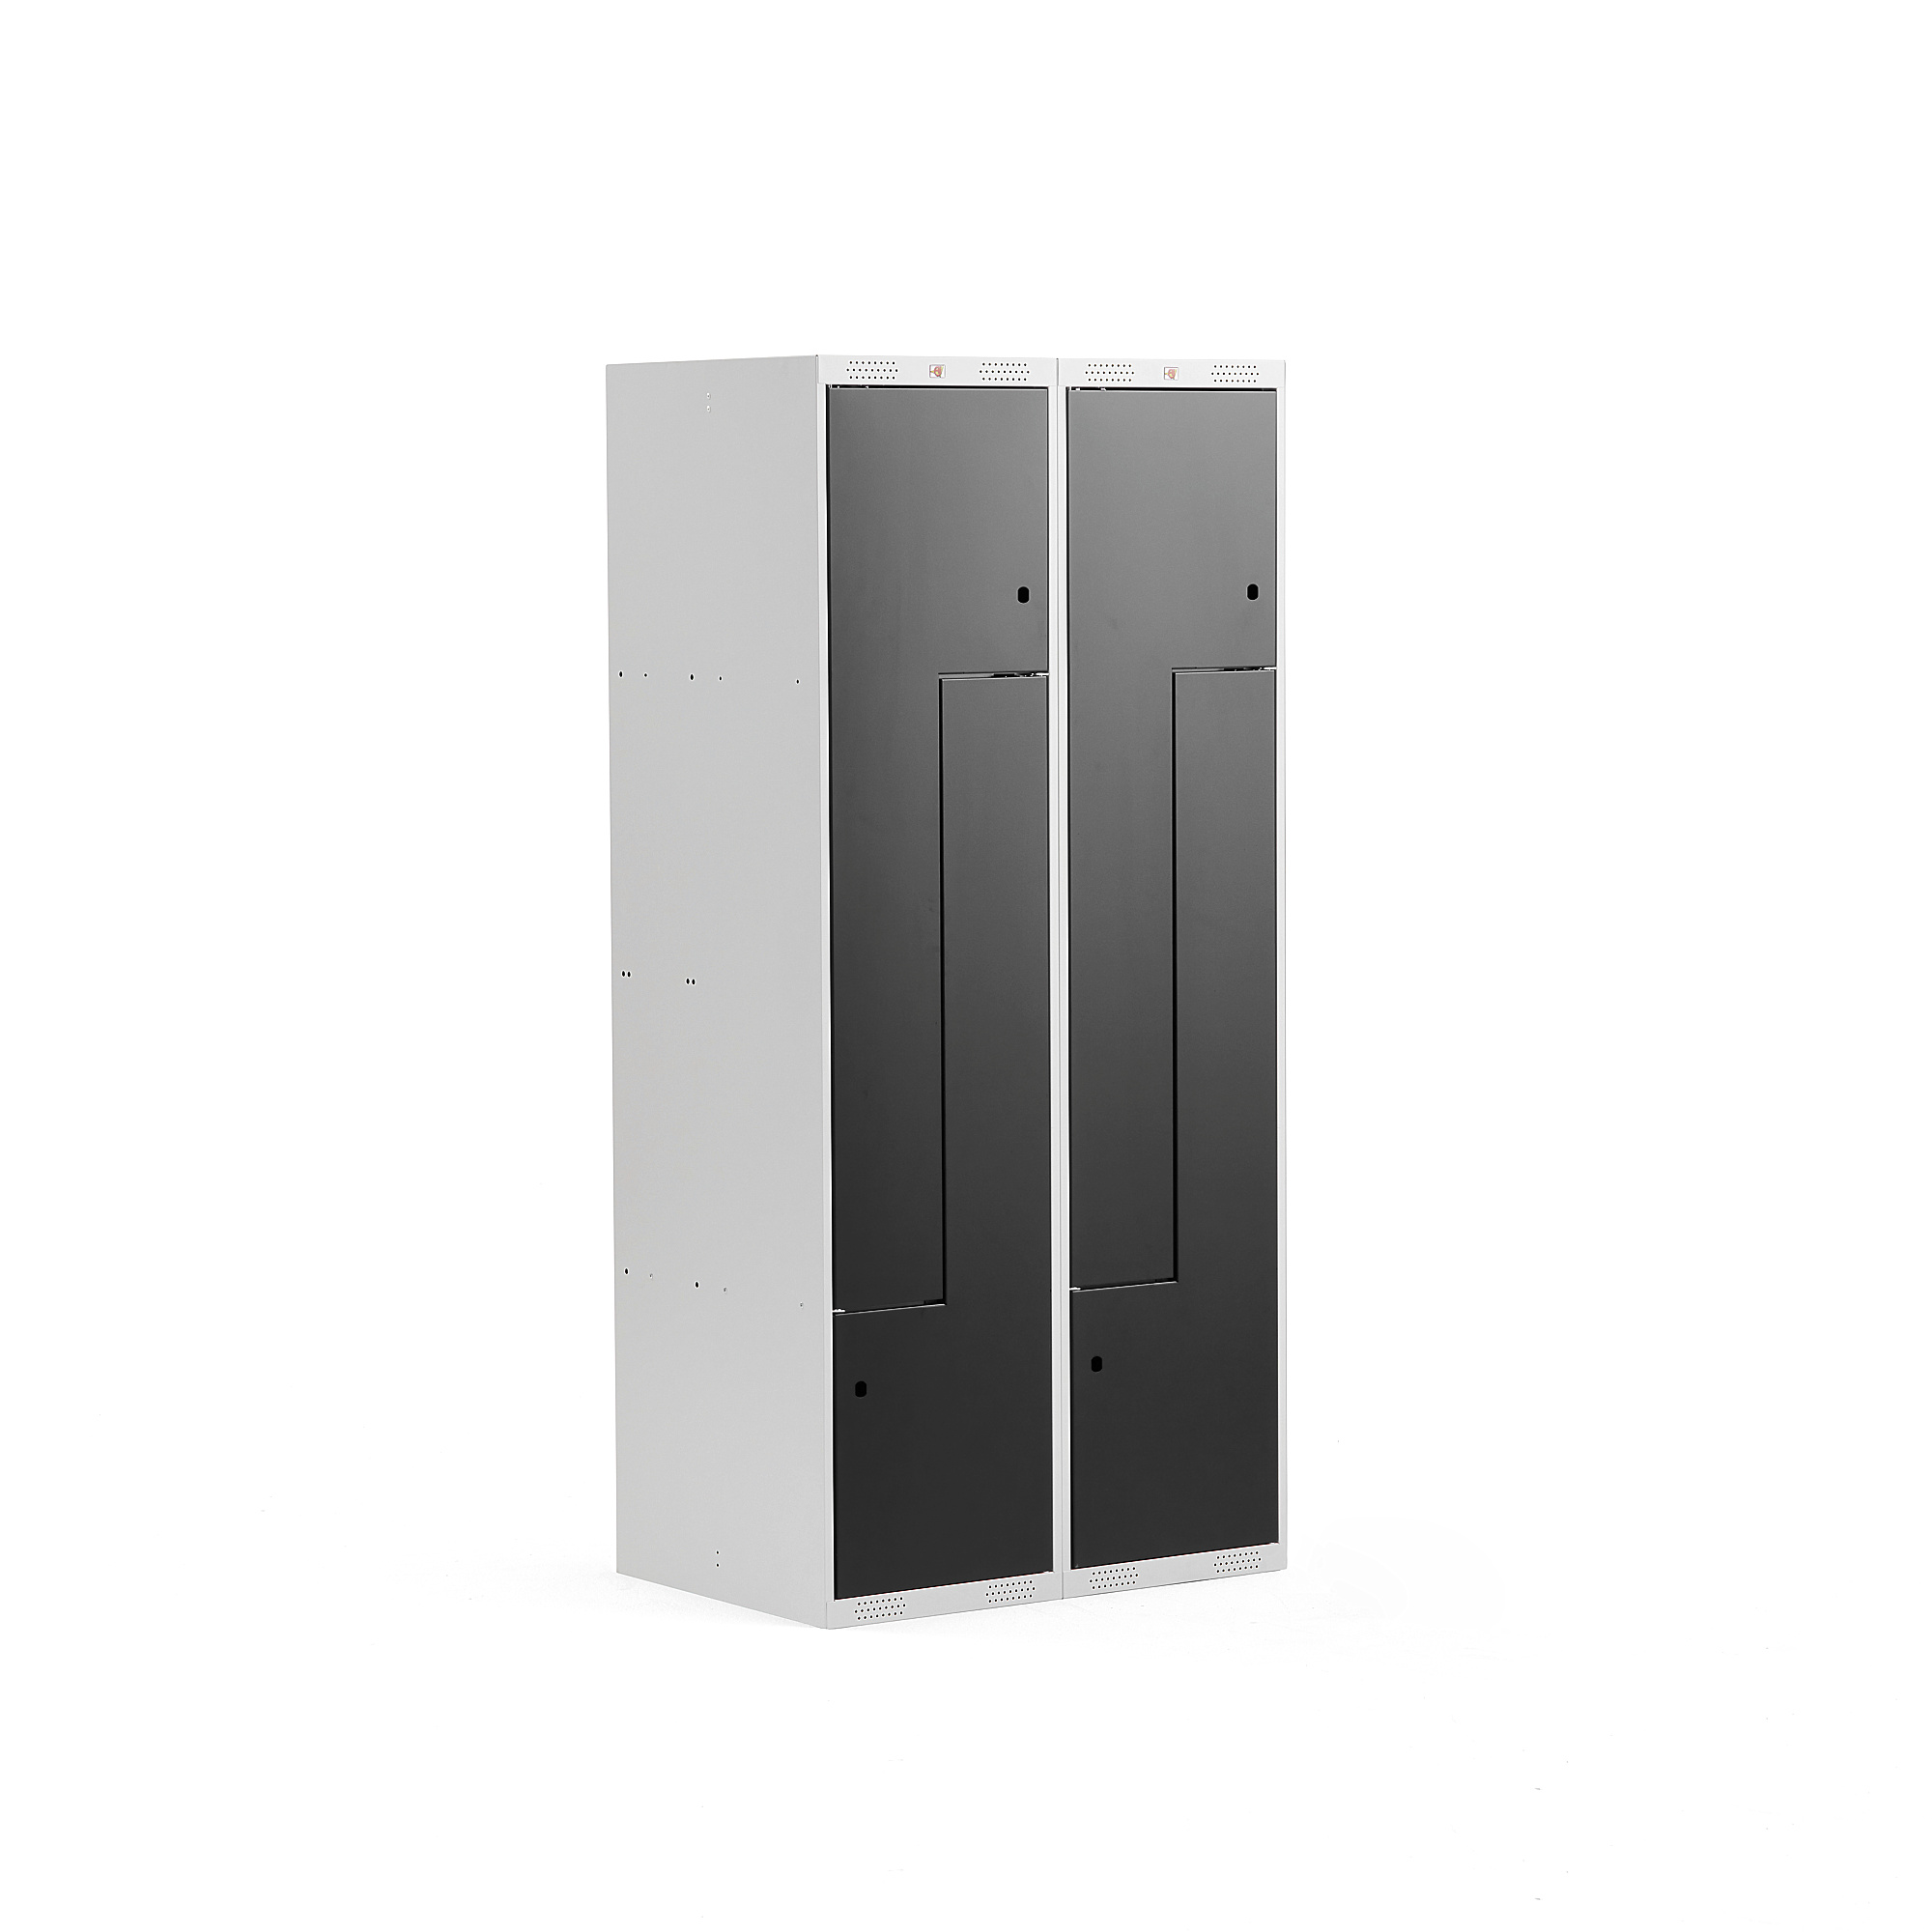 Šatní skříňka CLASSIC Z, 2 sekce, 4 boxy, 1800x800x500 mm, šedá/černé dveře